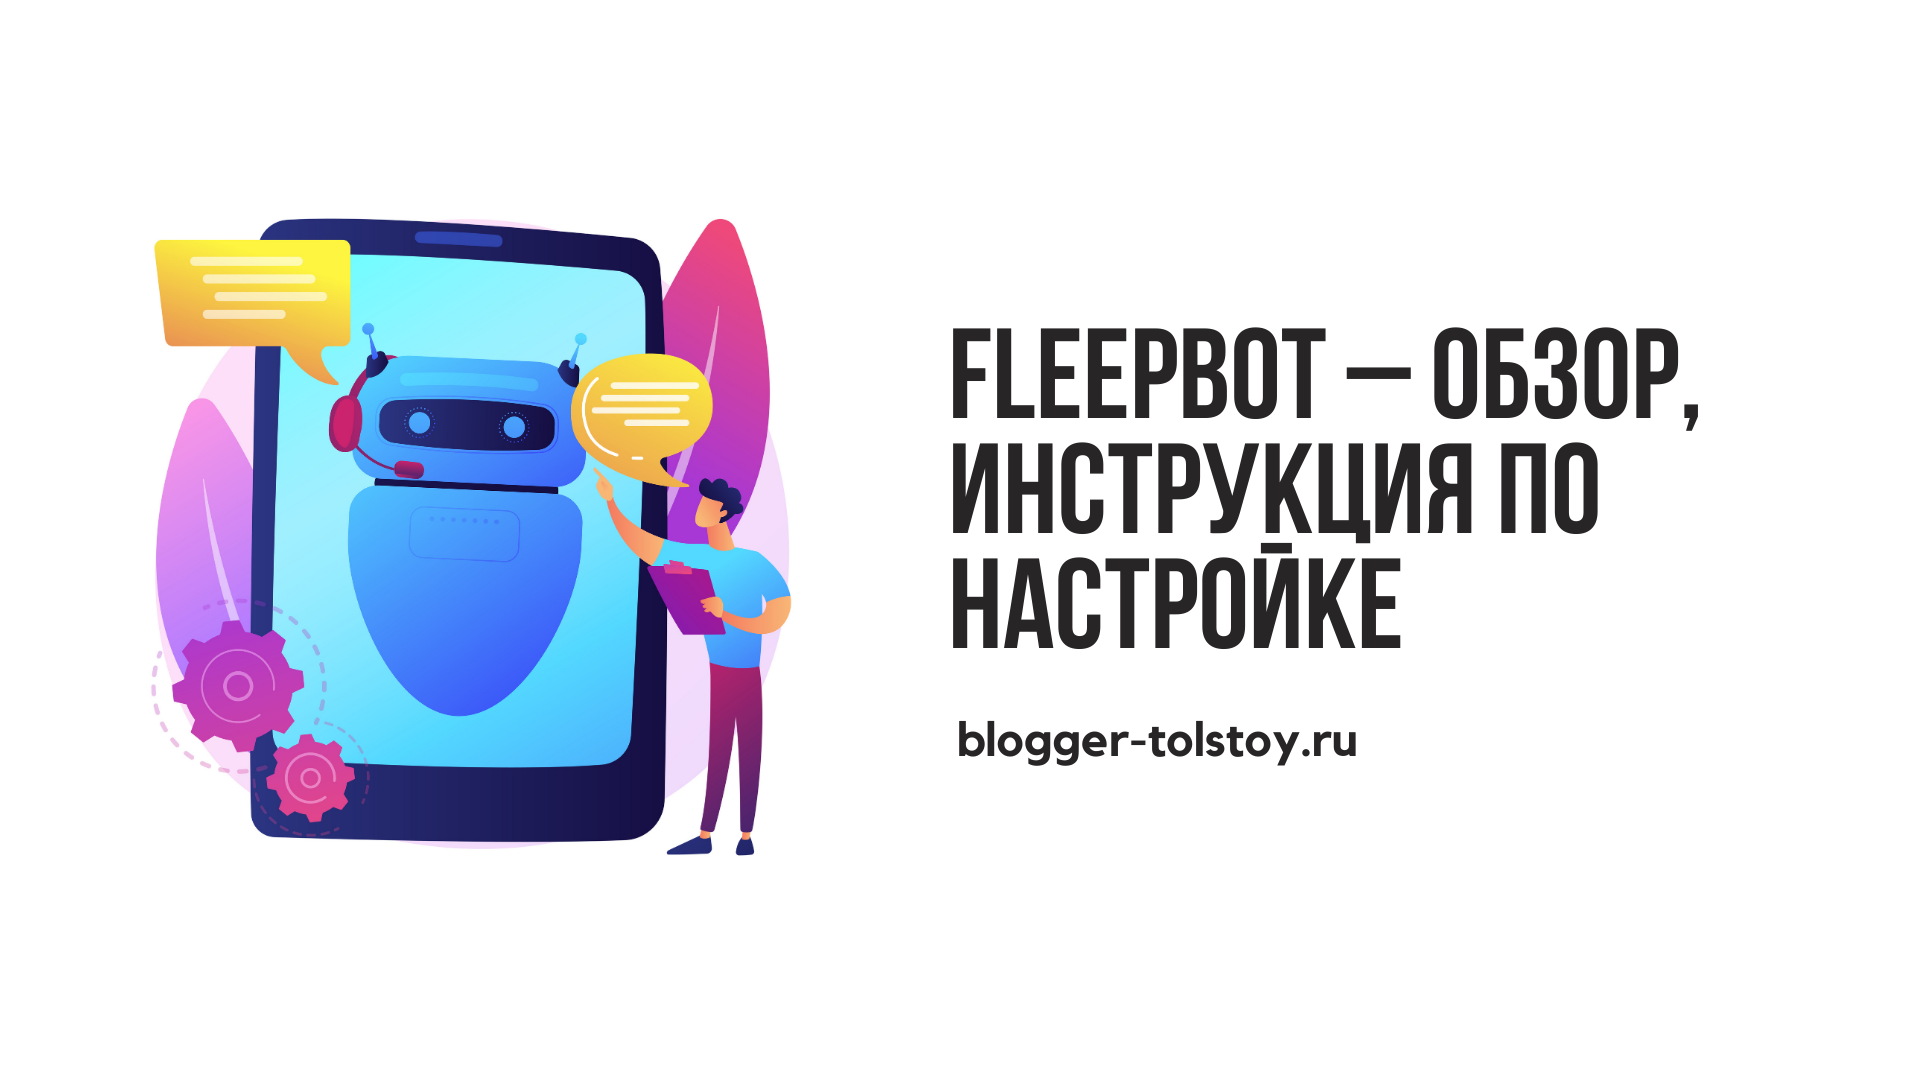 Превью к статье "FleepBot – обзор, инструкция по настройке".